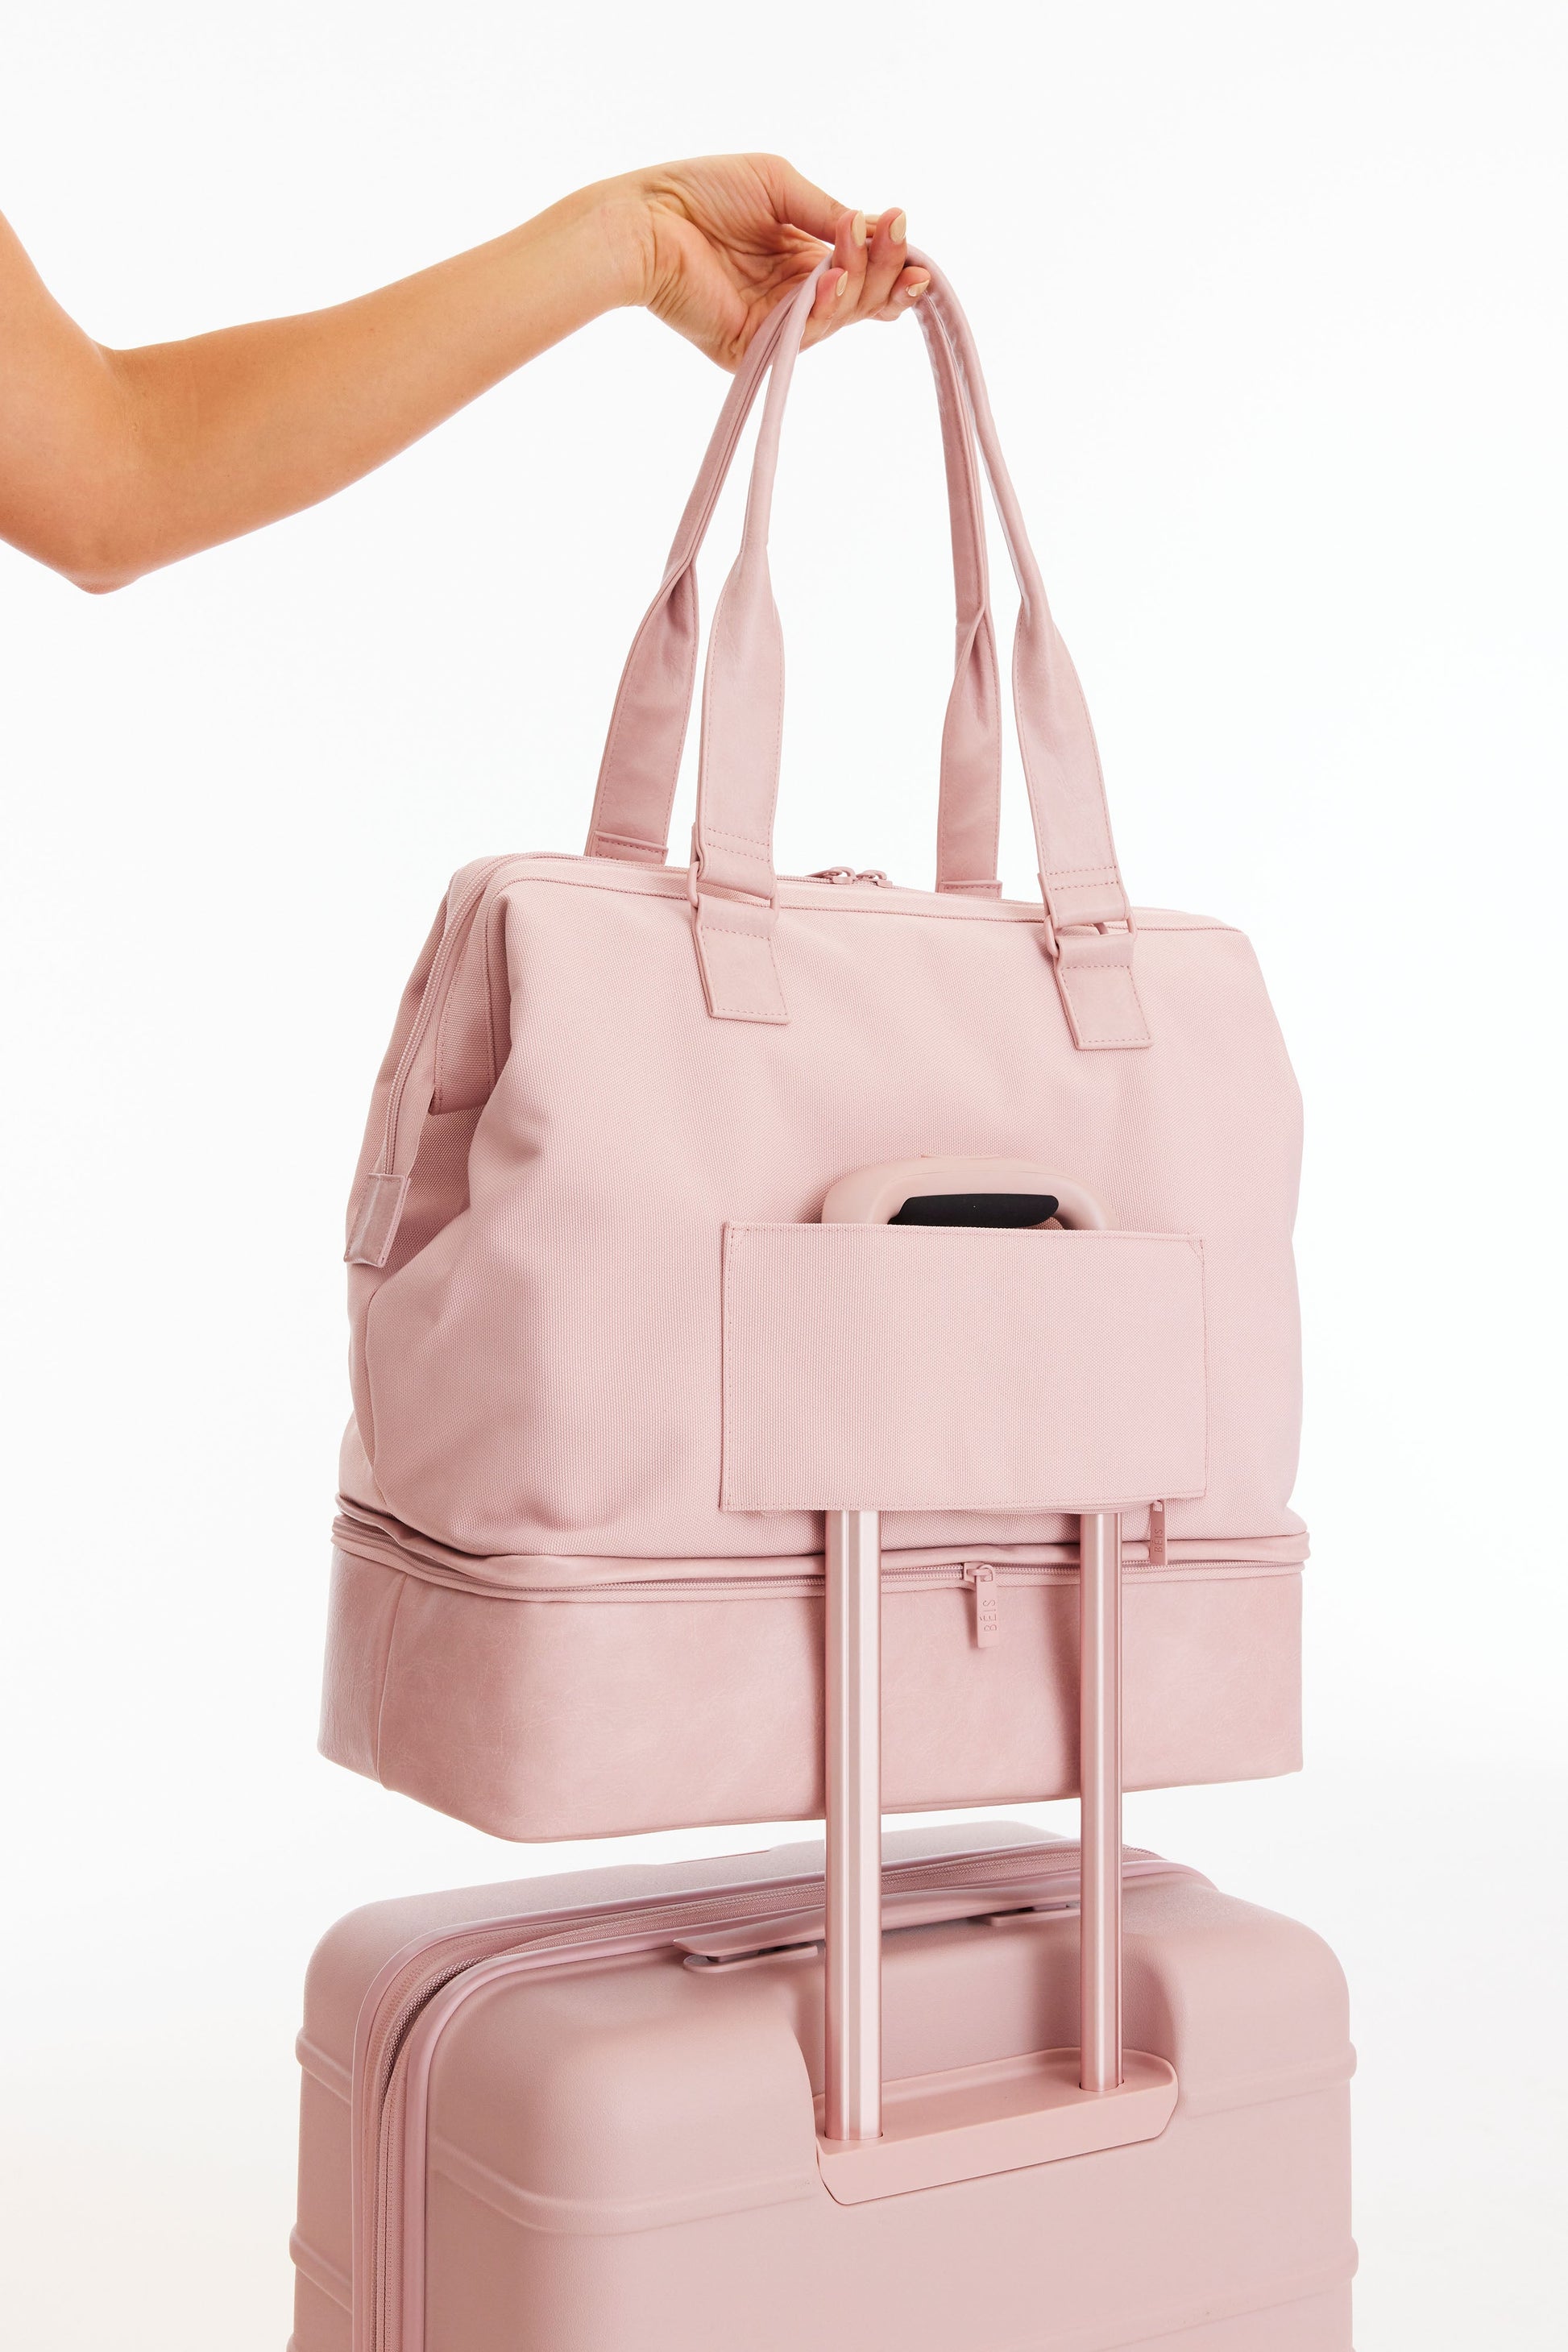 Béis 'The Weekender' in Atlas Pink - Weekender Travel Bag In Pink